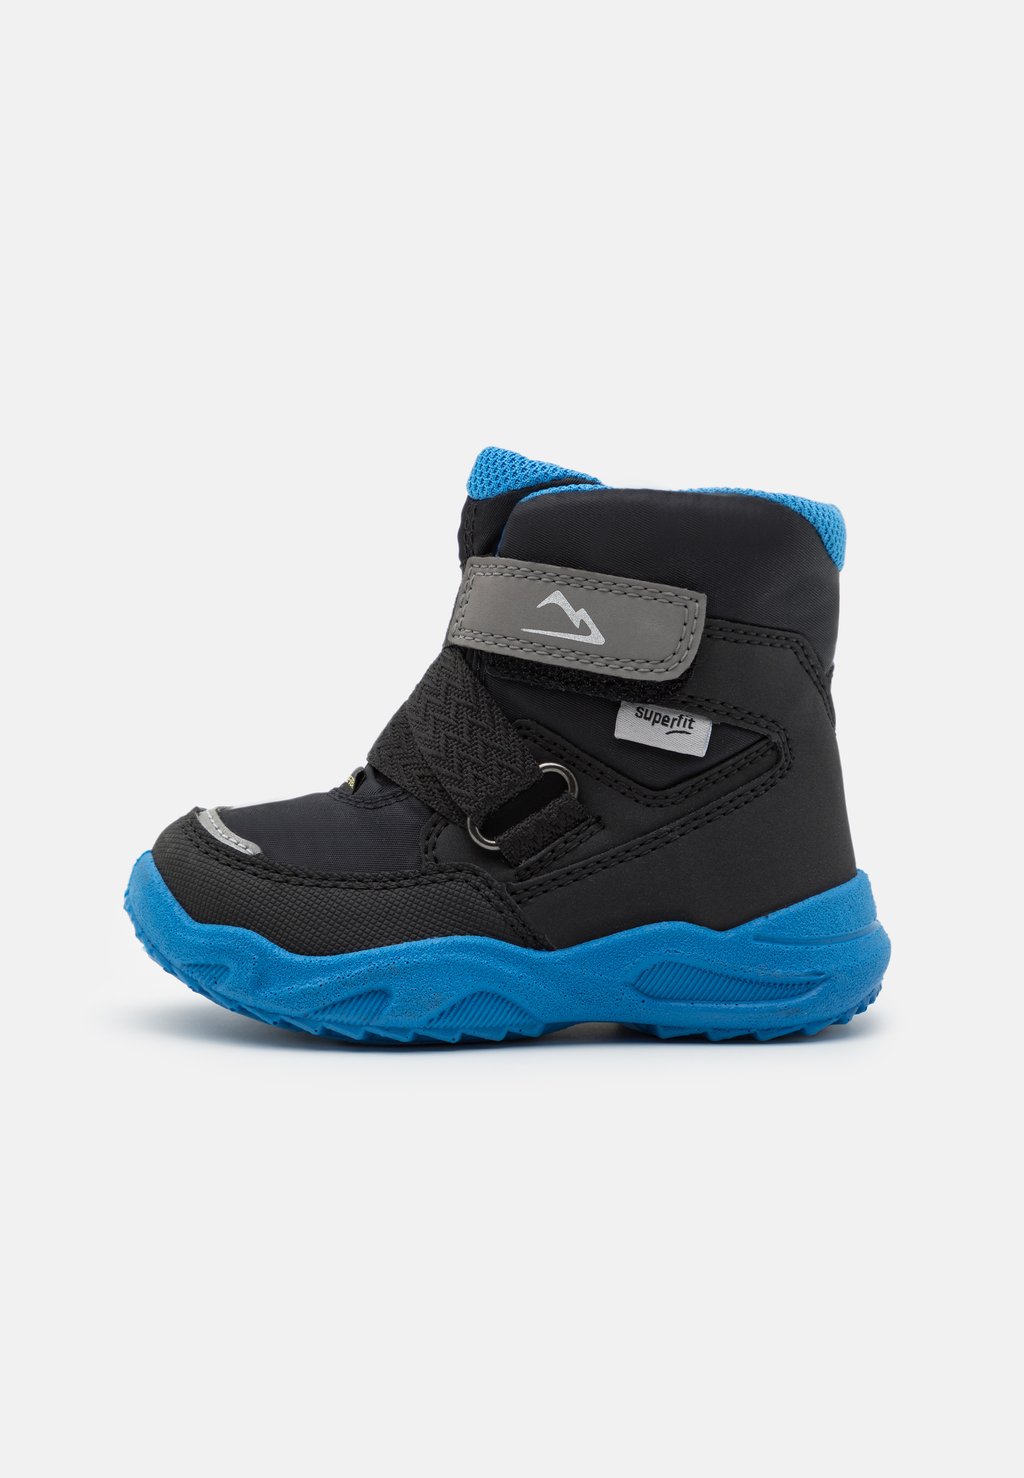 Зимние ботинки/зимние ботинки GLACIER Superfit, цвет schwarz/blau